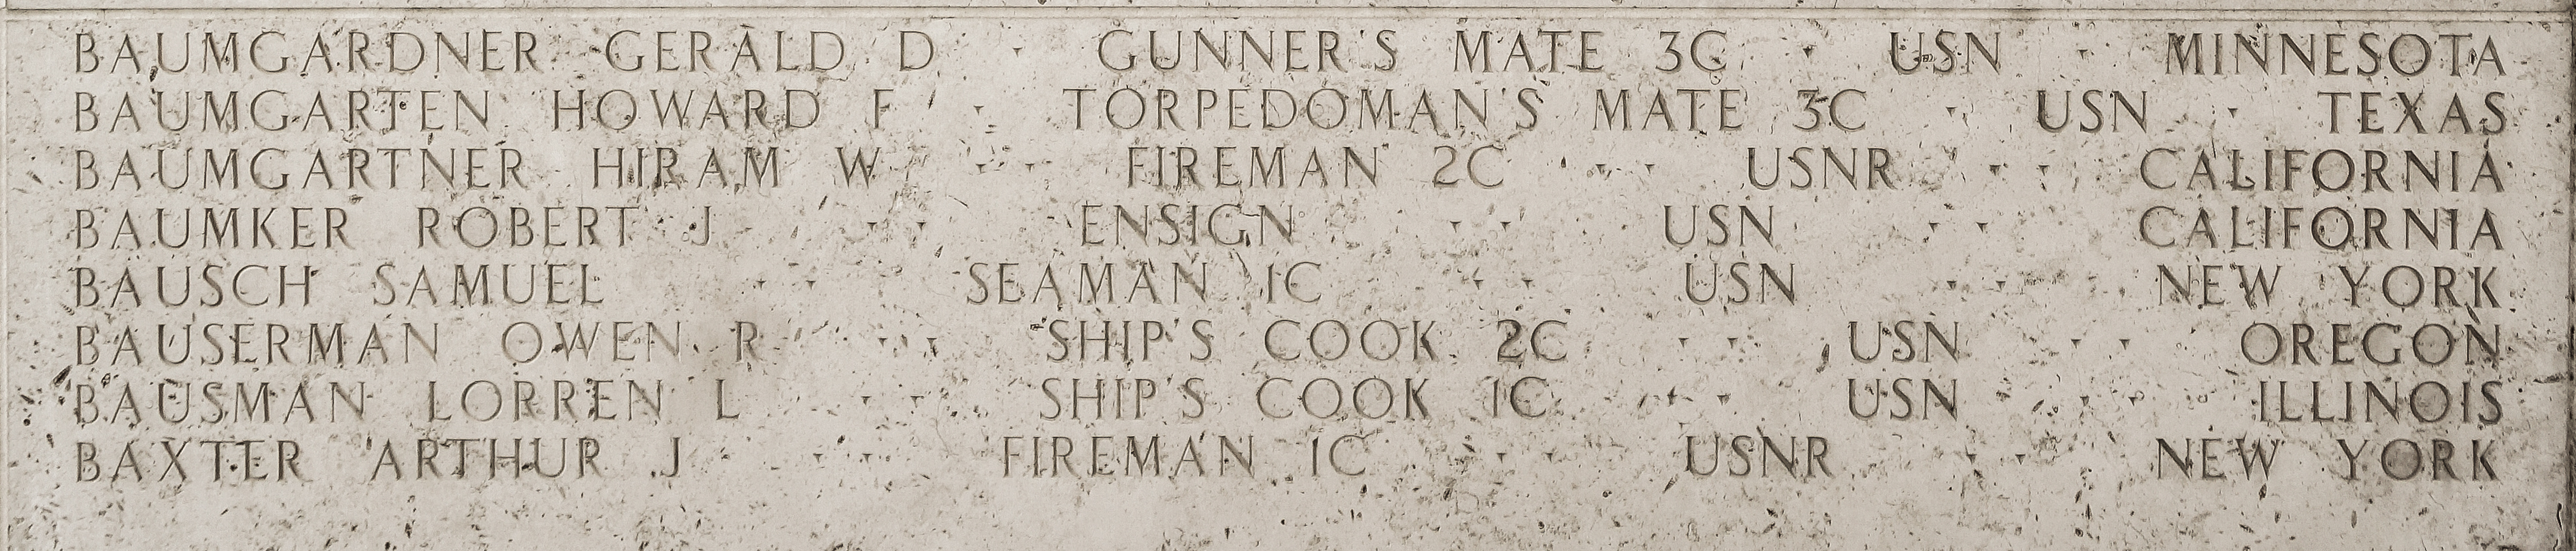 Lorren L. Bausman, Ship's Cook First Class